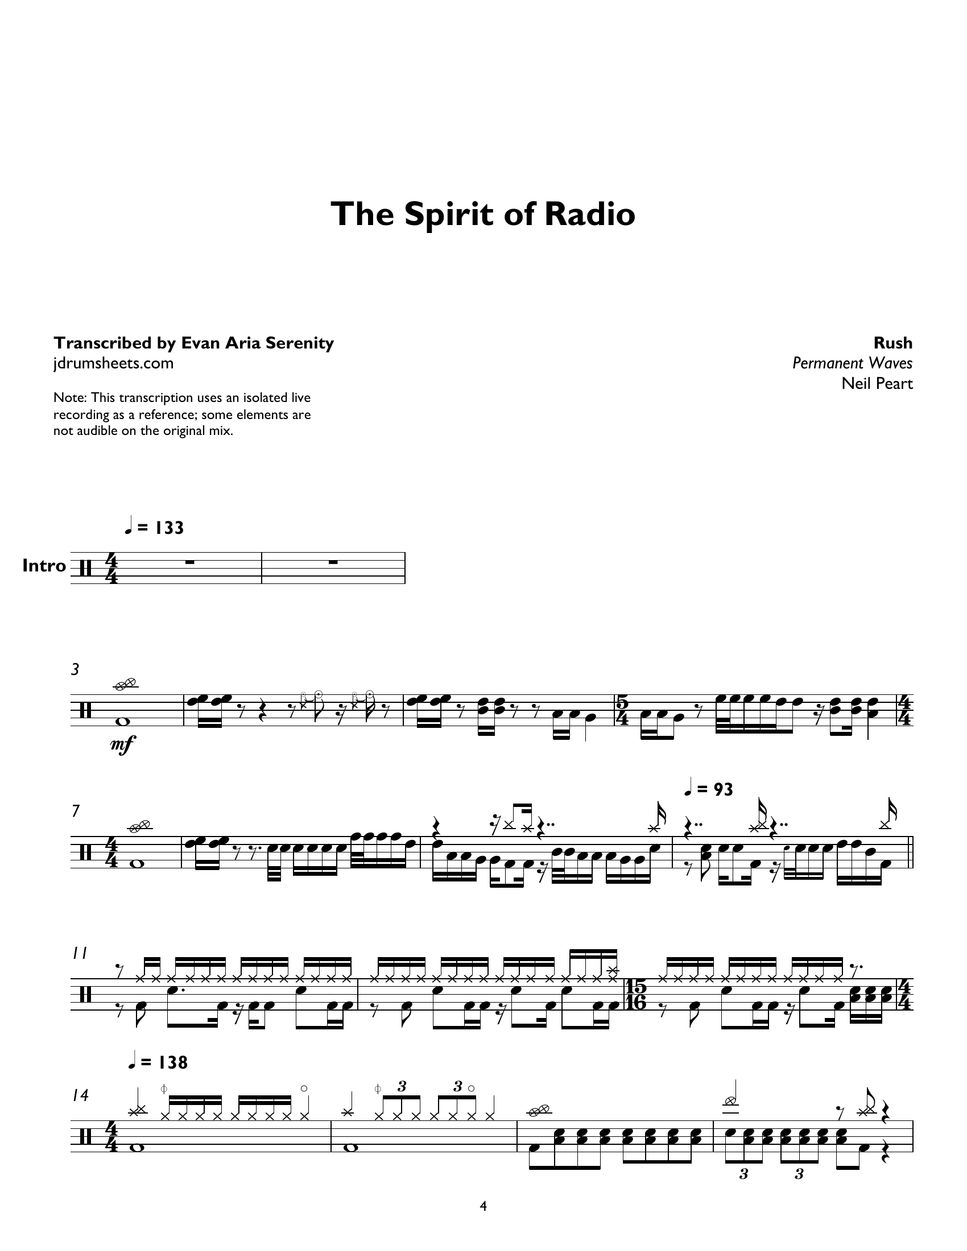 Rush - The Spirit of Radio by Evan Aria Serenity